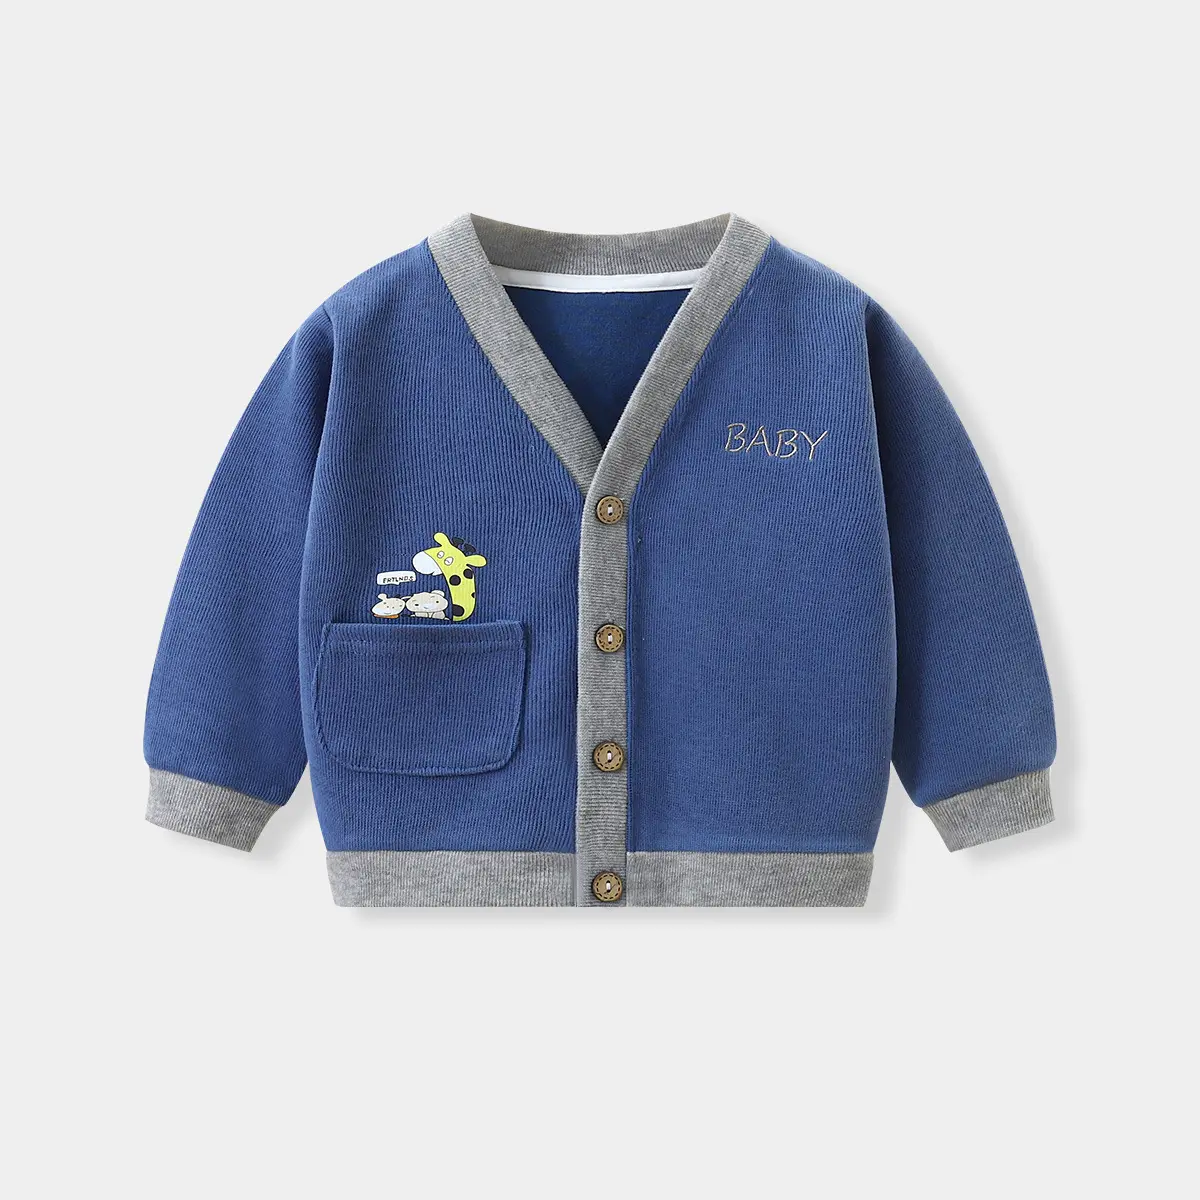 Kinder Strickjacke Frühling und Herbst Mantel Jungen Pullover Baby kleidung Faden Kleidung weiblich 0-5 Jahre alt Strickjacke